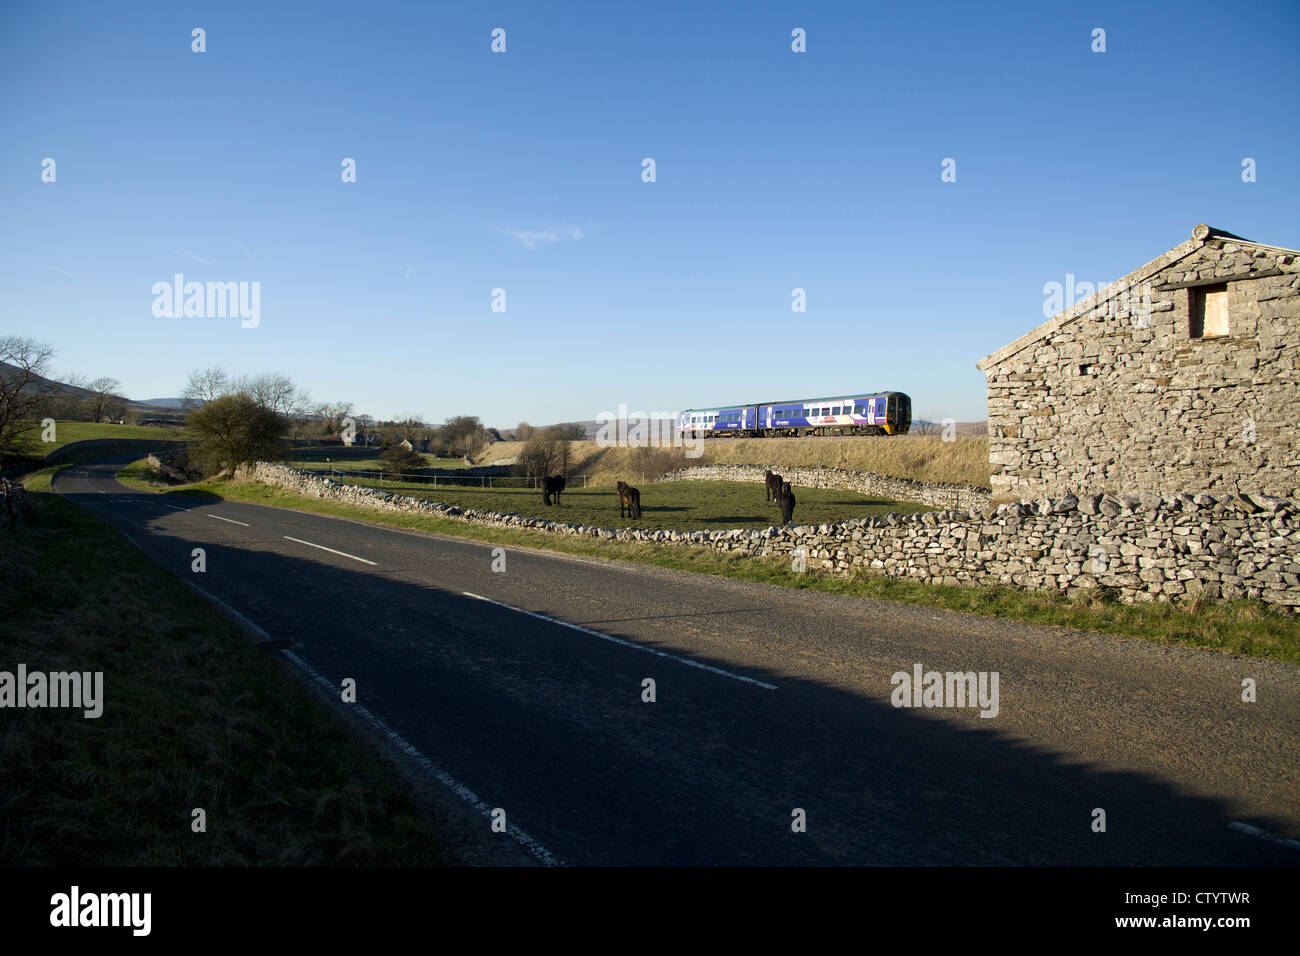 Nord classe rampa 158 passa Selside sul sedimentare e Carlisle linea ferroviaria. Lunedì 26 Marzo 2012 Foto Stock